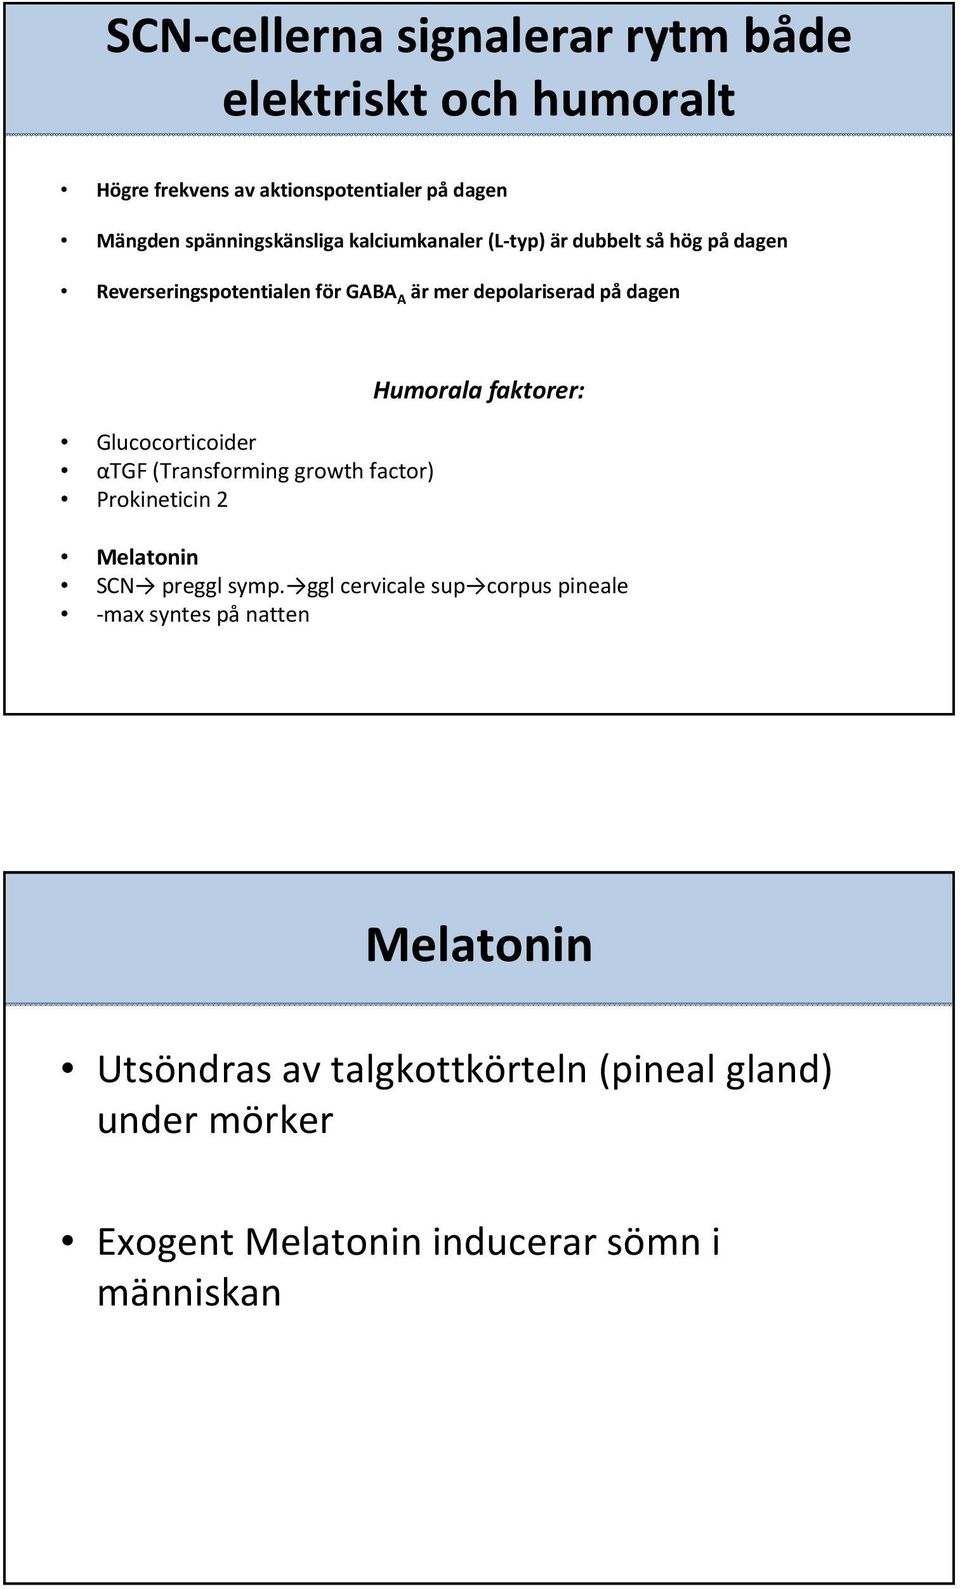 αtgf (Transforming growth factor) Prokineticin 2 Humorala faktorer: Melatonin SCN preggl symp.